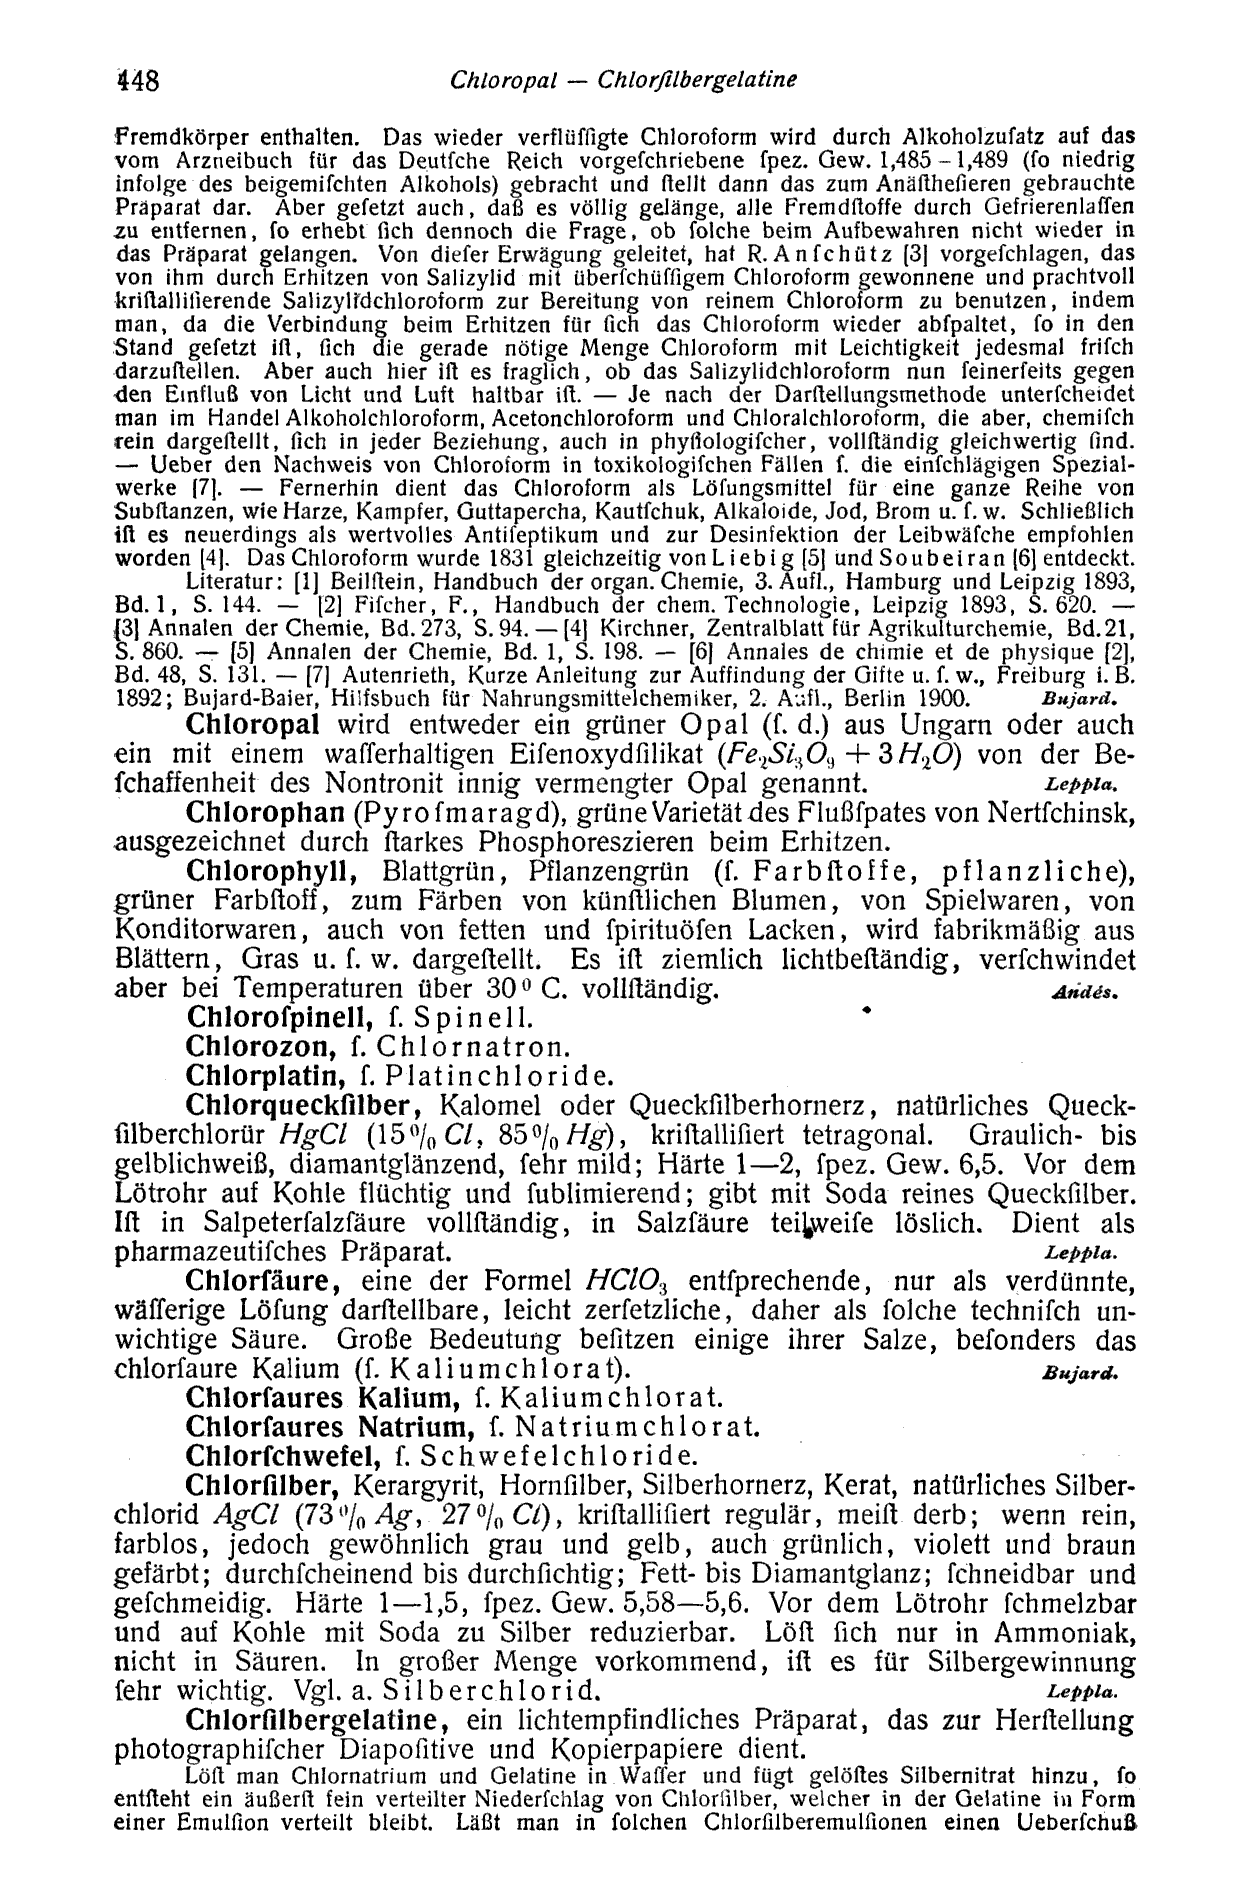 Lueger, Otto: Lexikon der gesamten Technik und ihrer Hilfswissenschaften, Bd. 2 Stuttgart, Leipzig 1905. S. 448